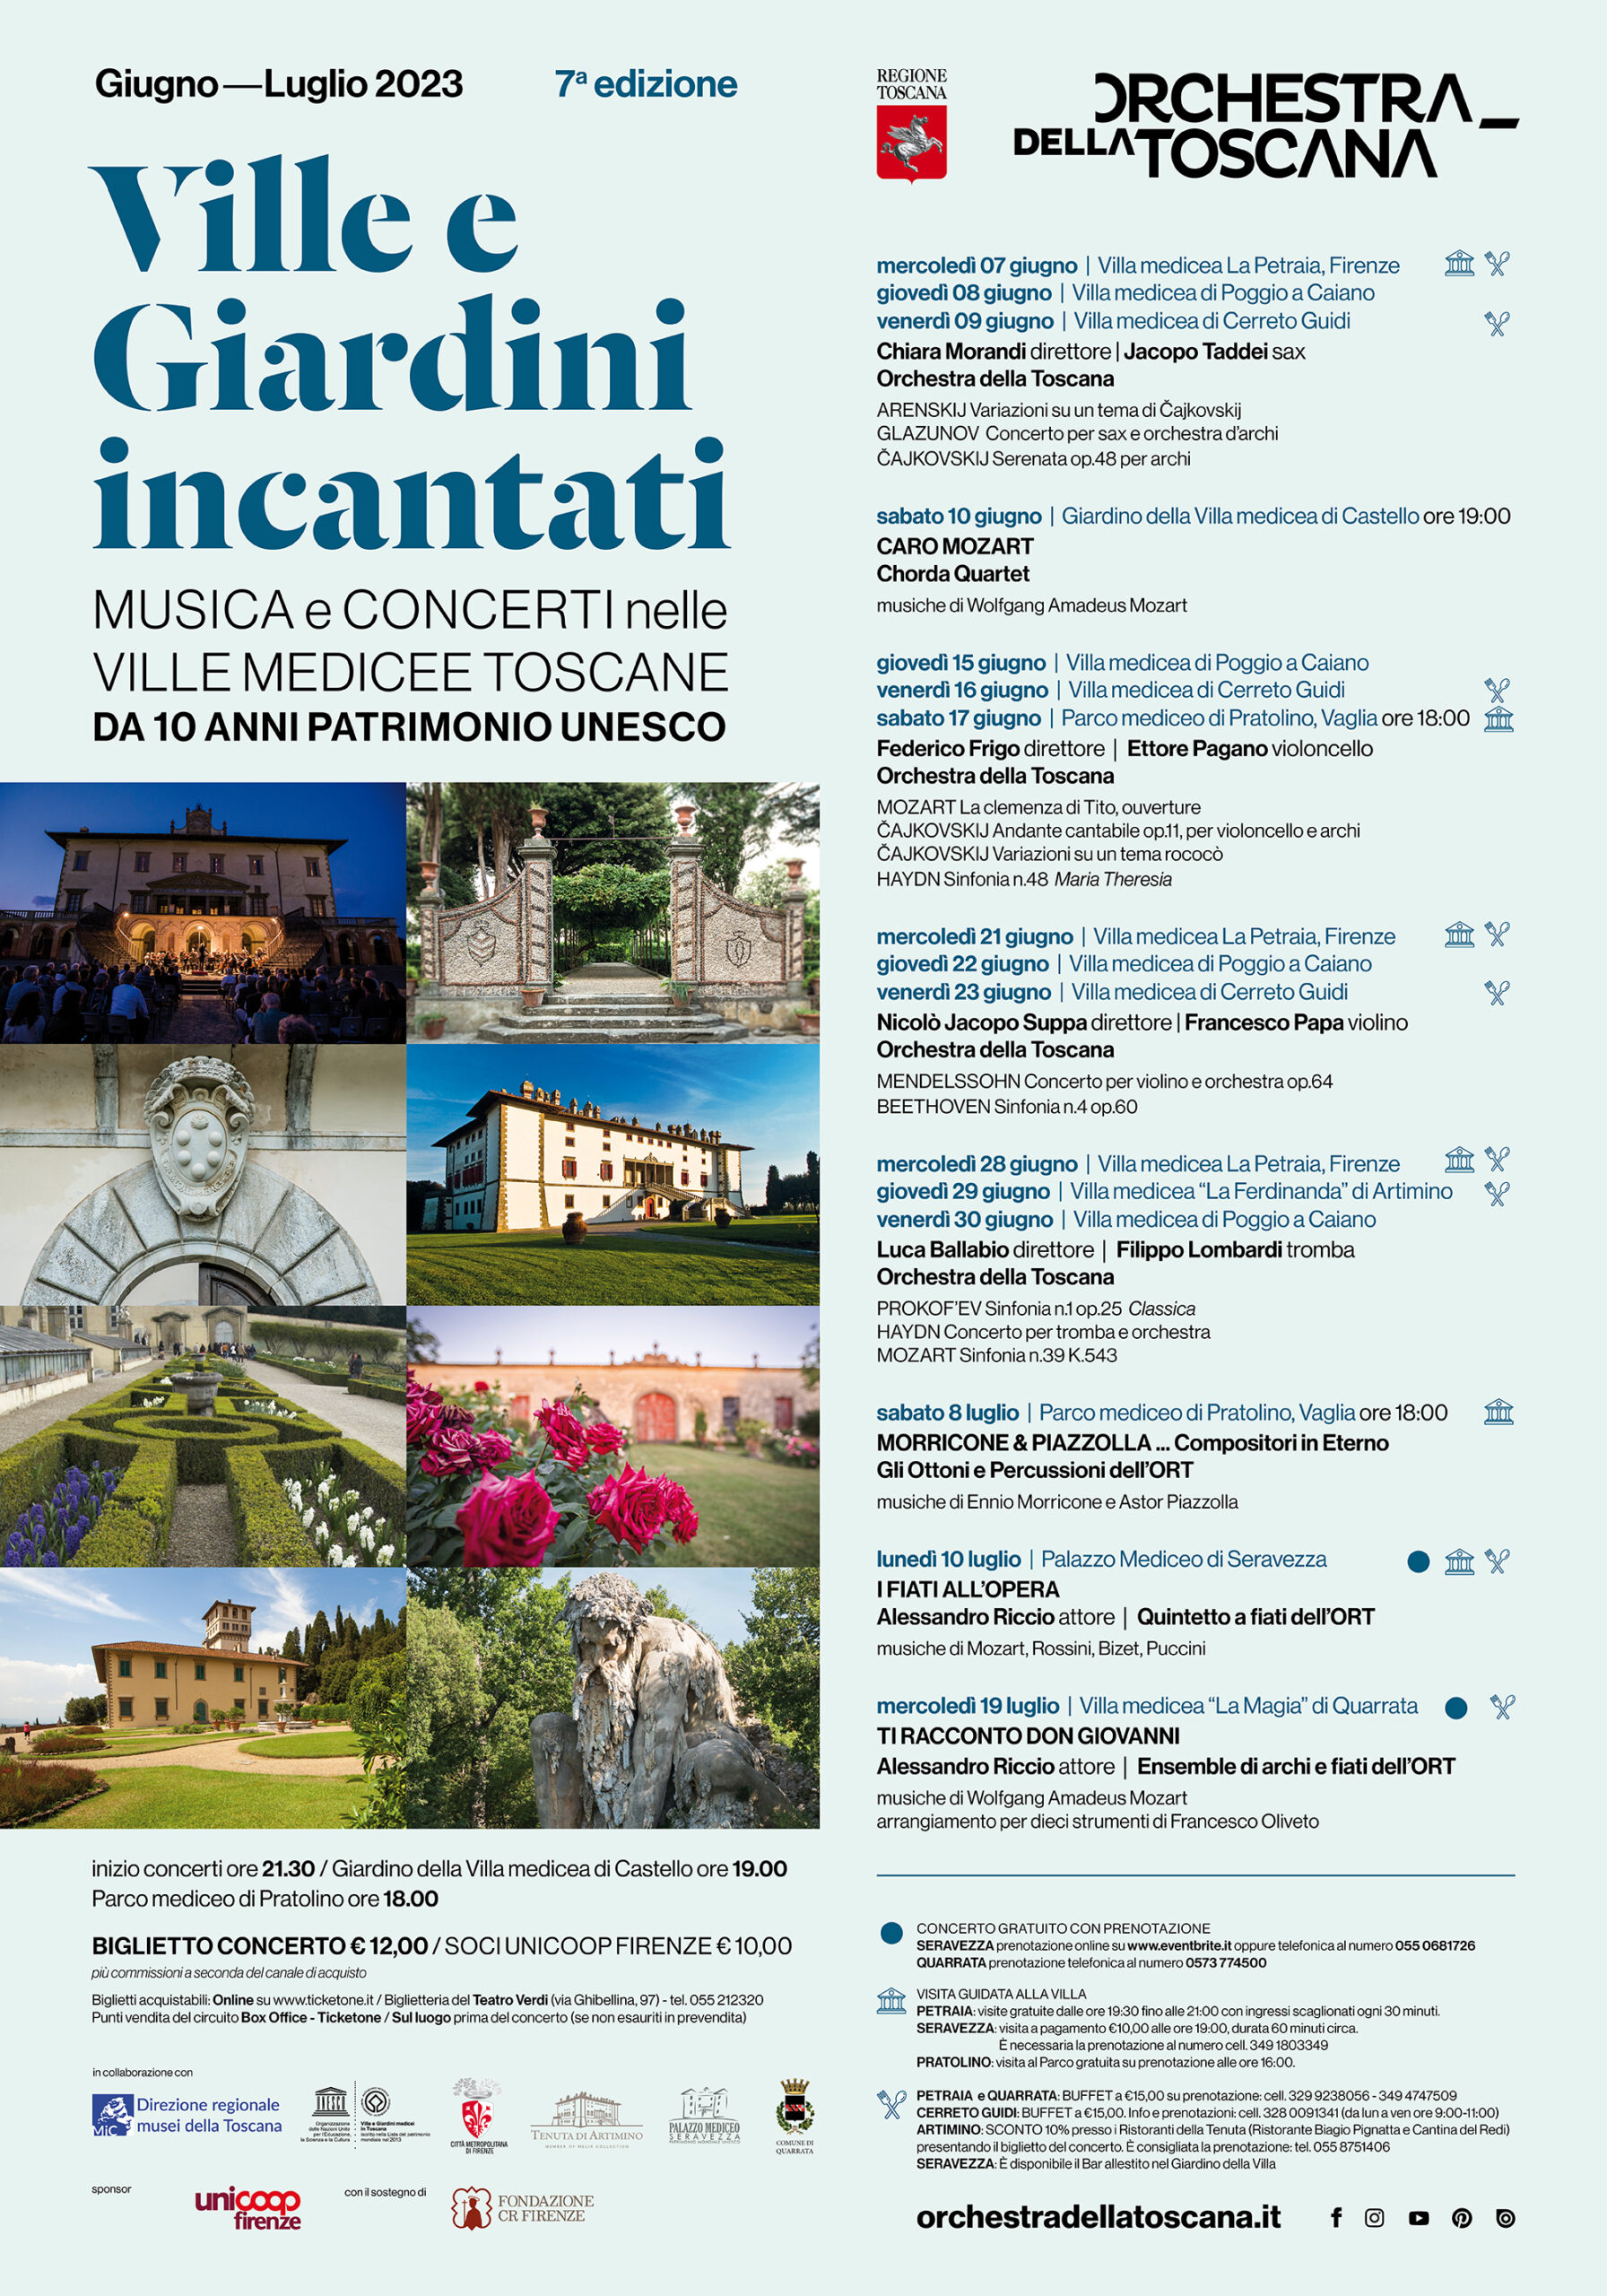 <strong> L’Estate dell’ORT nelle Ville medicee della Toscana, da 10 anni Patrimonio Unesco.</strong>